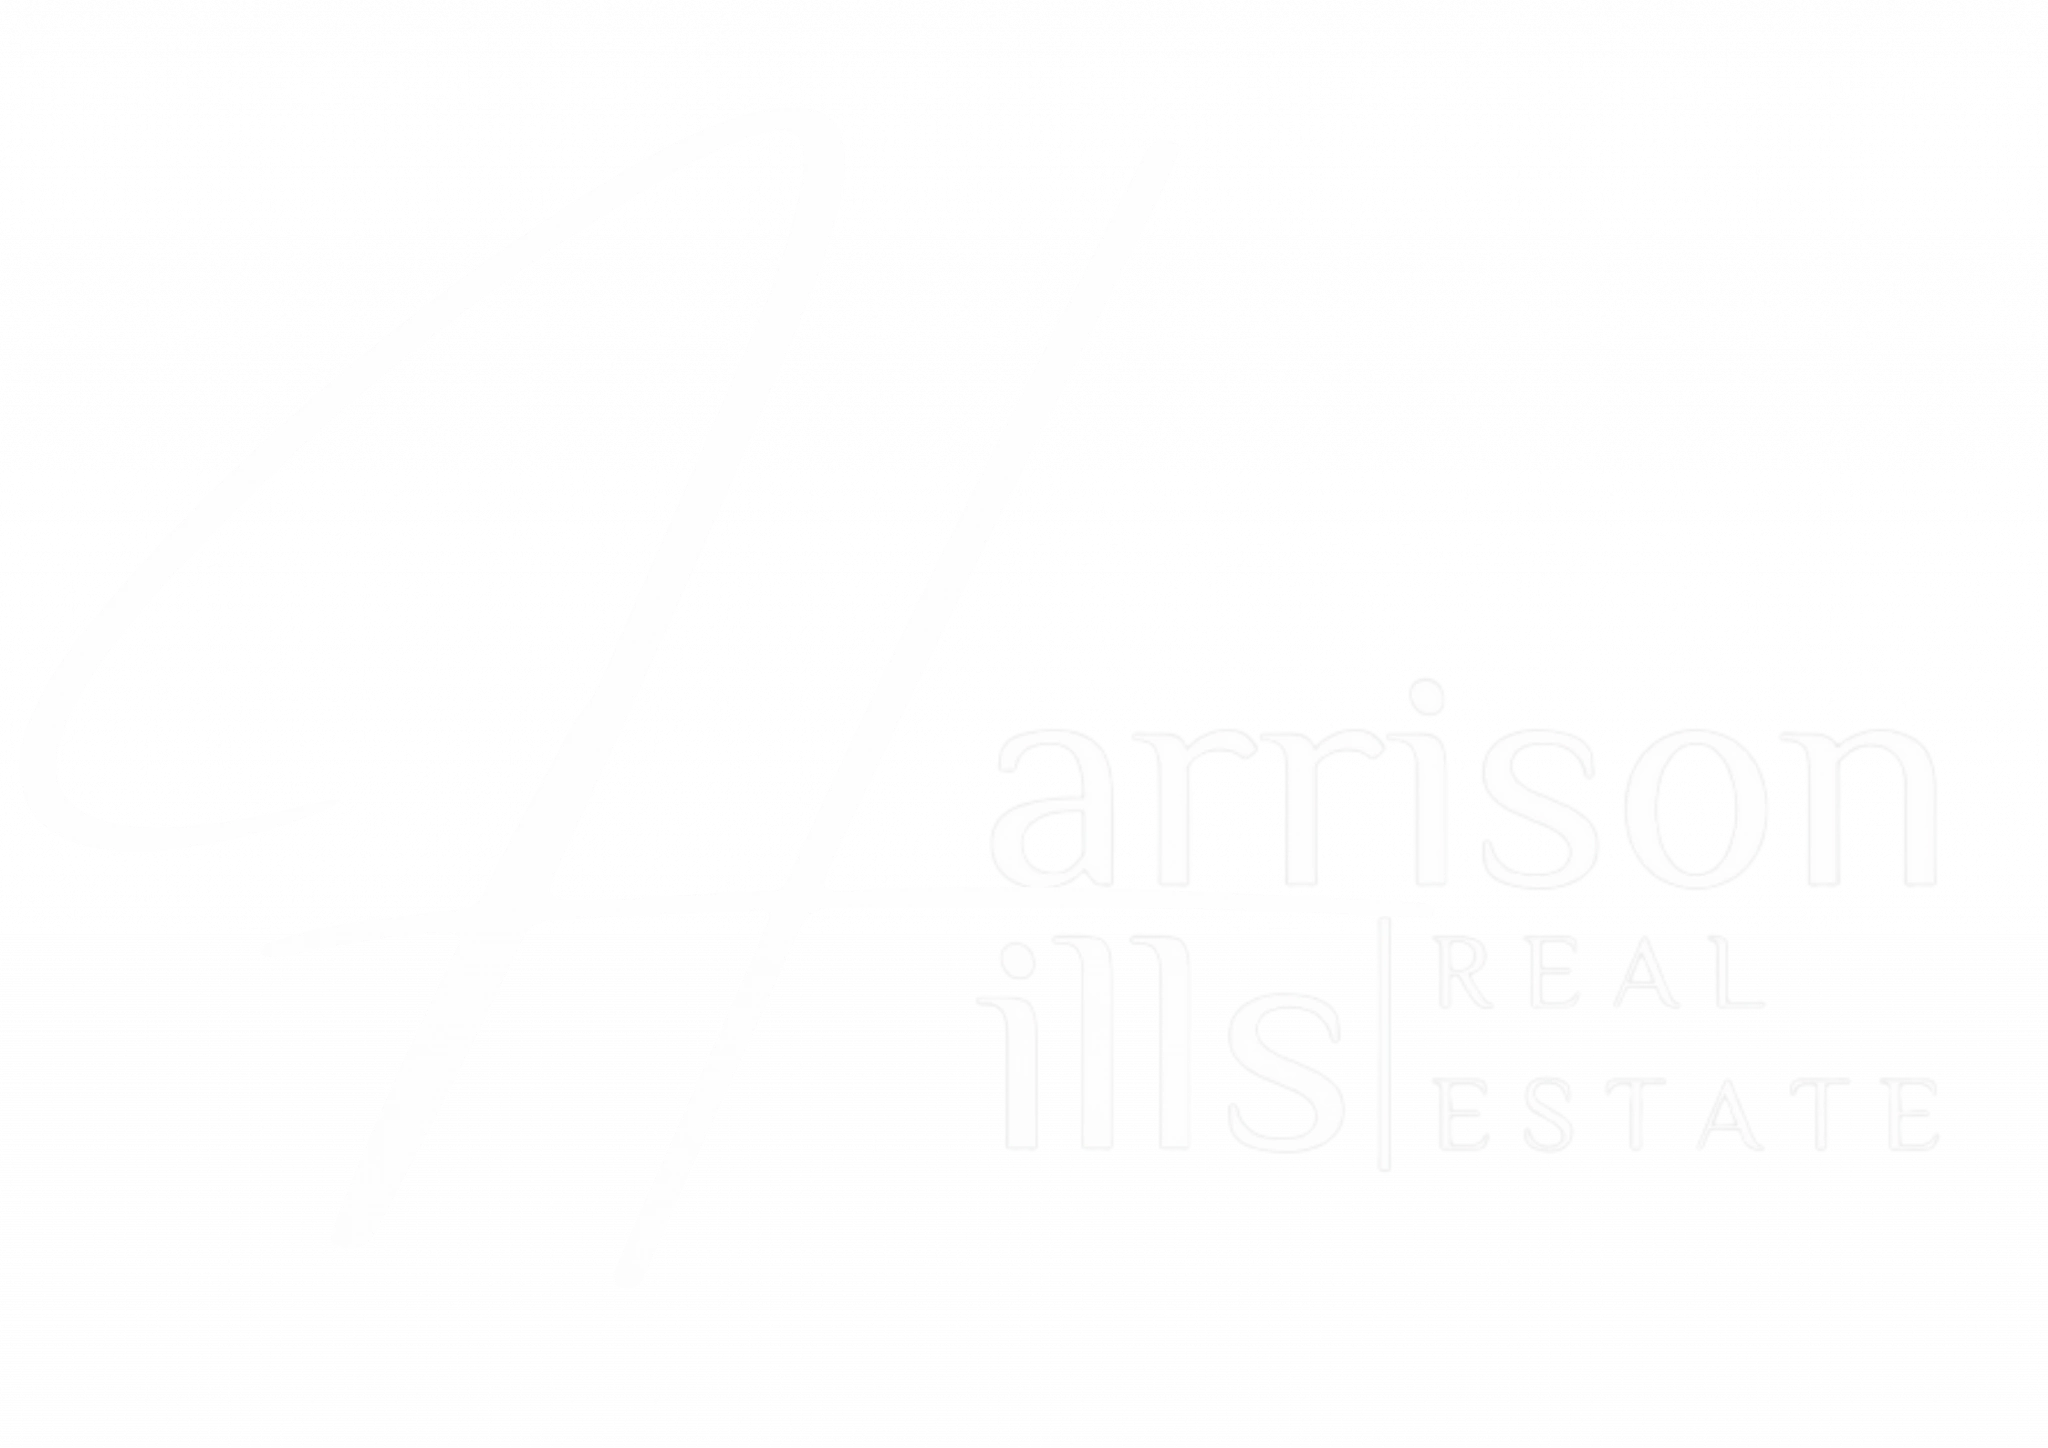 Harrison Hills Real Estate - Real Estate Agency